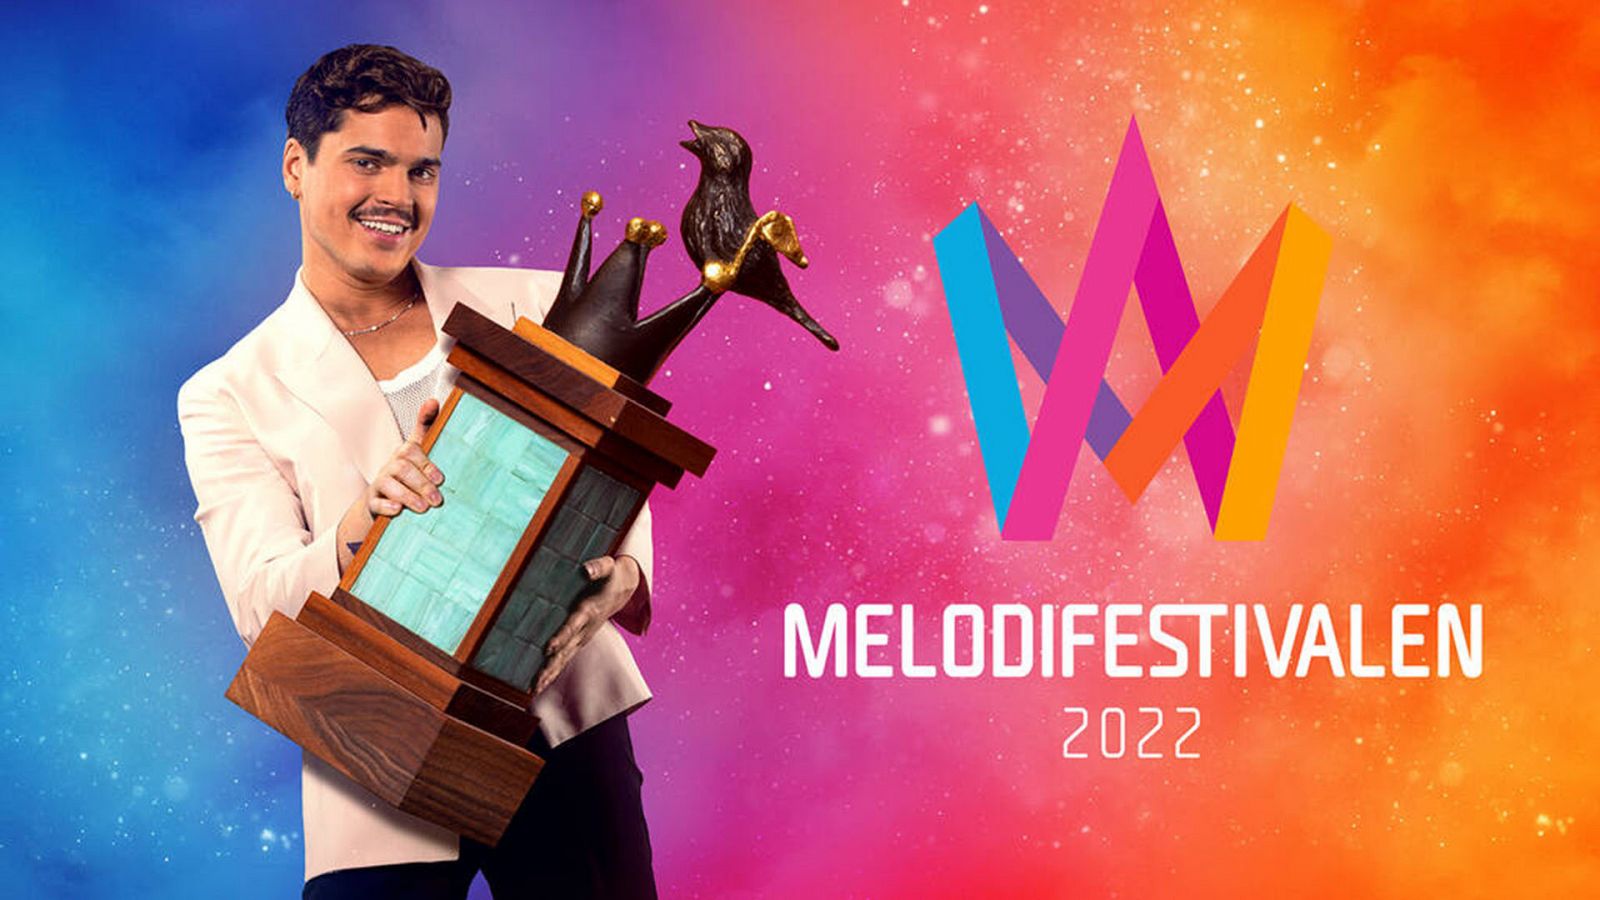 12 canciones luchan por ganar el Melodifestivalen 2022 y representar a Suecia en Eurovisión